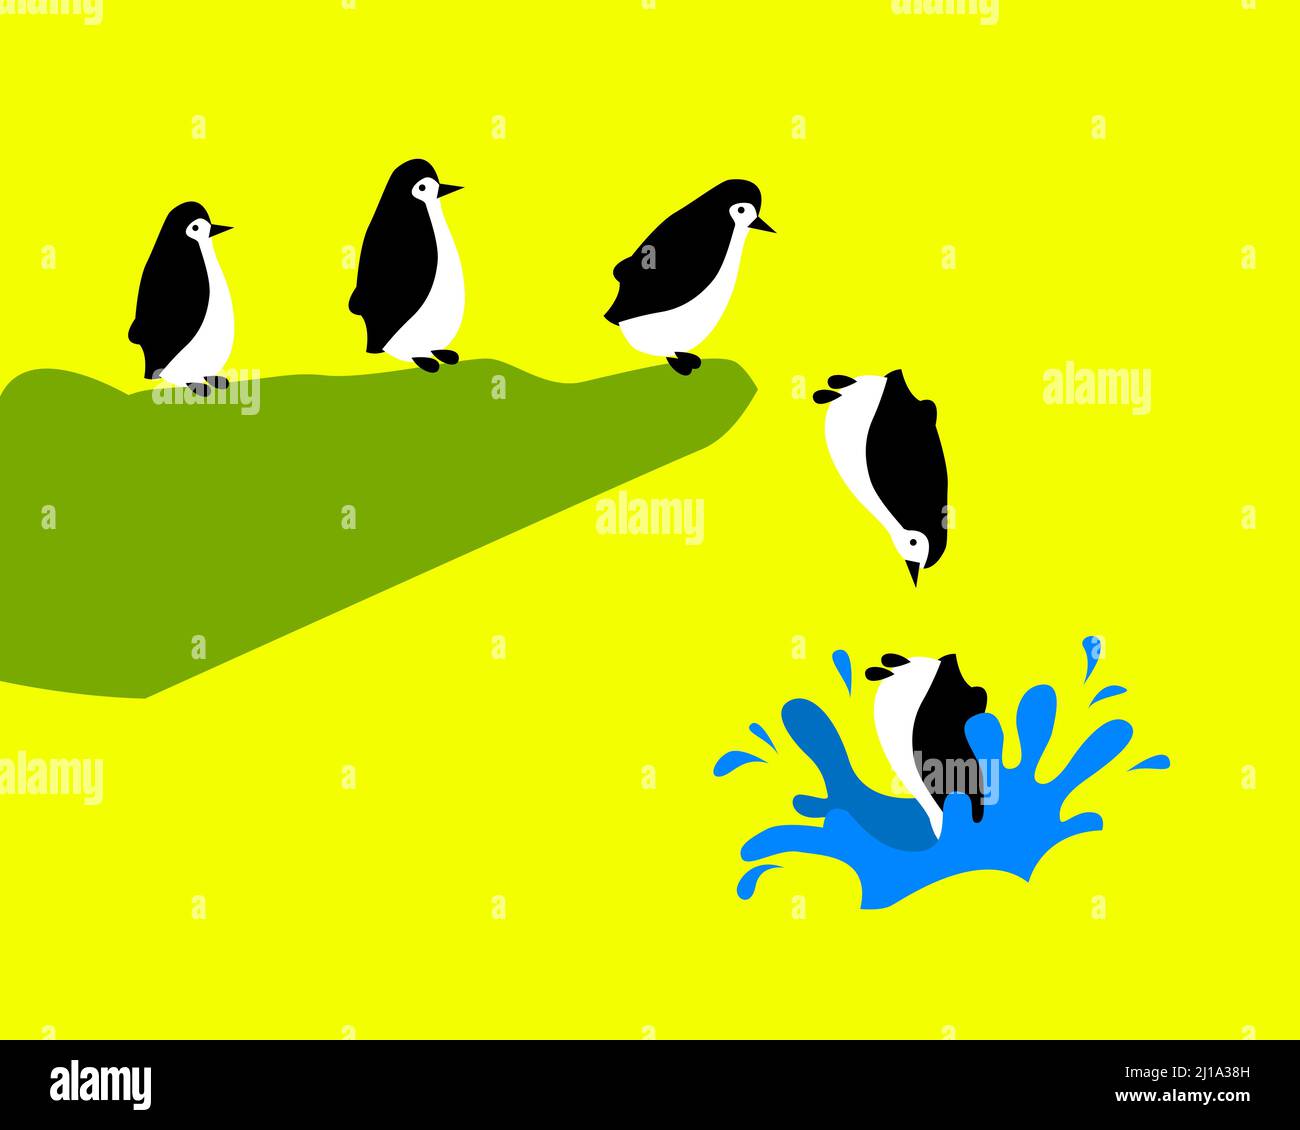 Pinguini che saltano in acqua - concetto di illustrazione vettoriale isolato su sfondo giallo Illustrazione Vettoriale